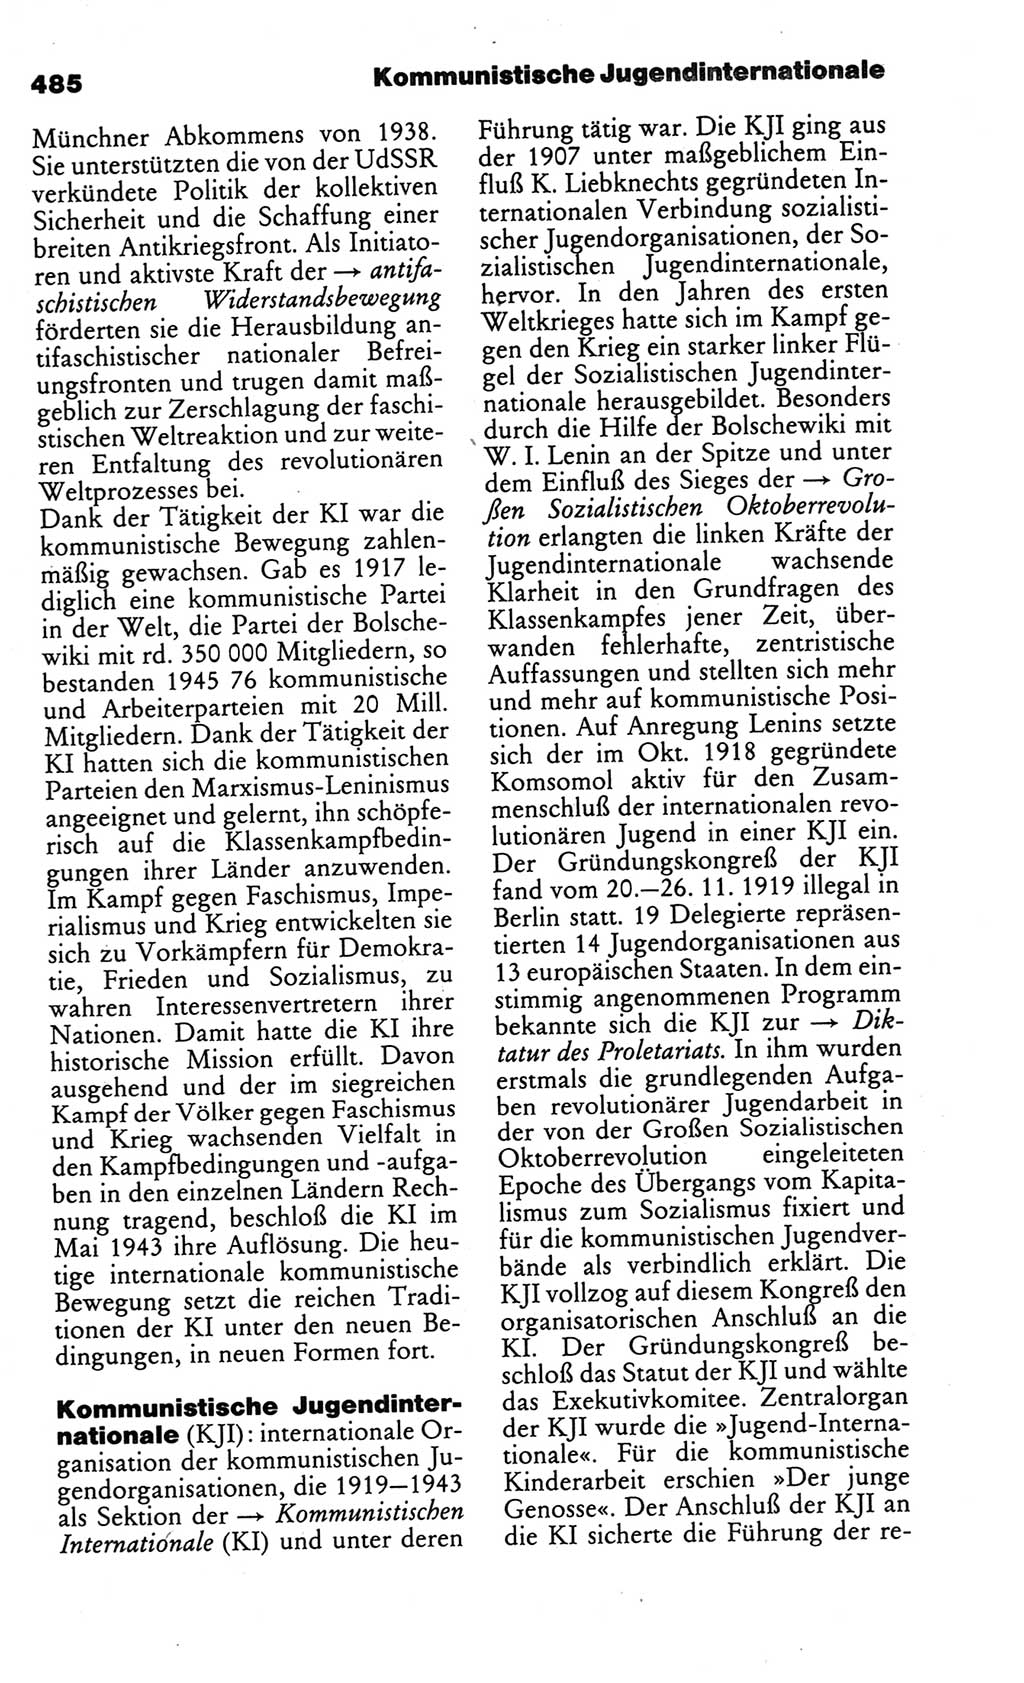 Kleines politisches Wörterbuch [Deutsche Demokratische Republik (DDR)] 1986, Seite 485 (Kl. pol. Wb. DDR 1986, S. 485)